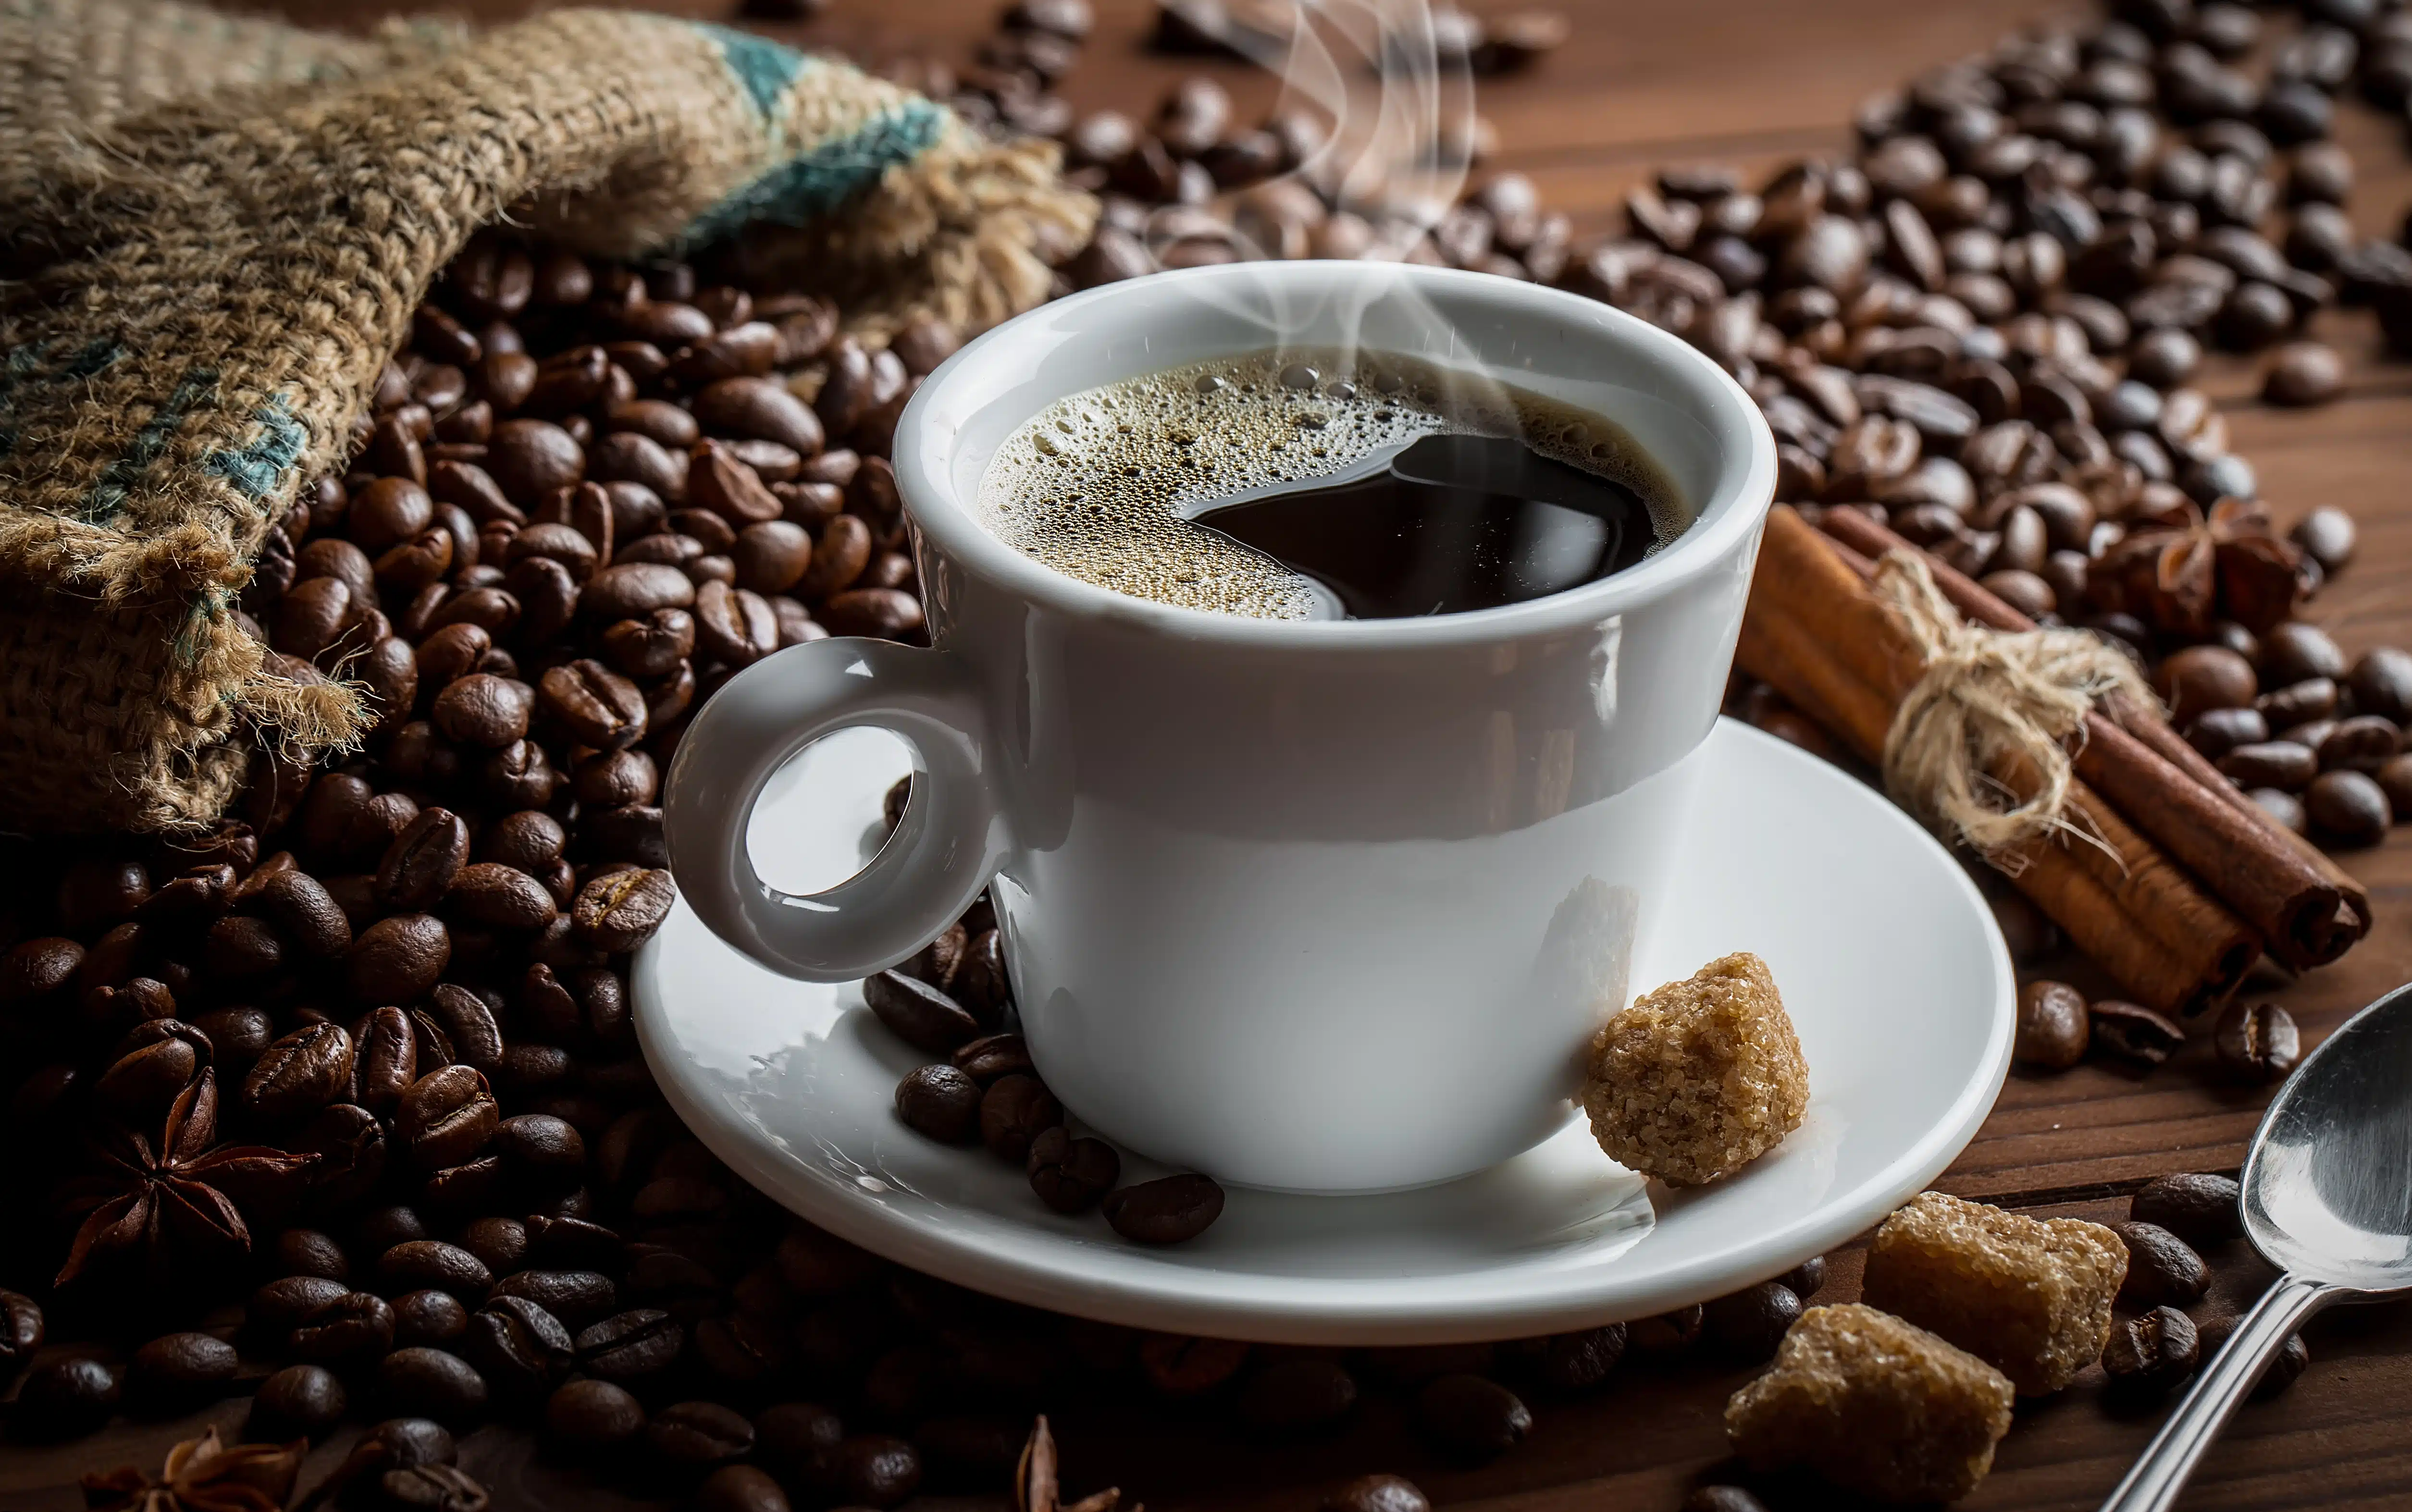 Mejores marcas de café según Profeco